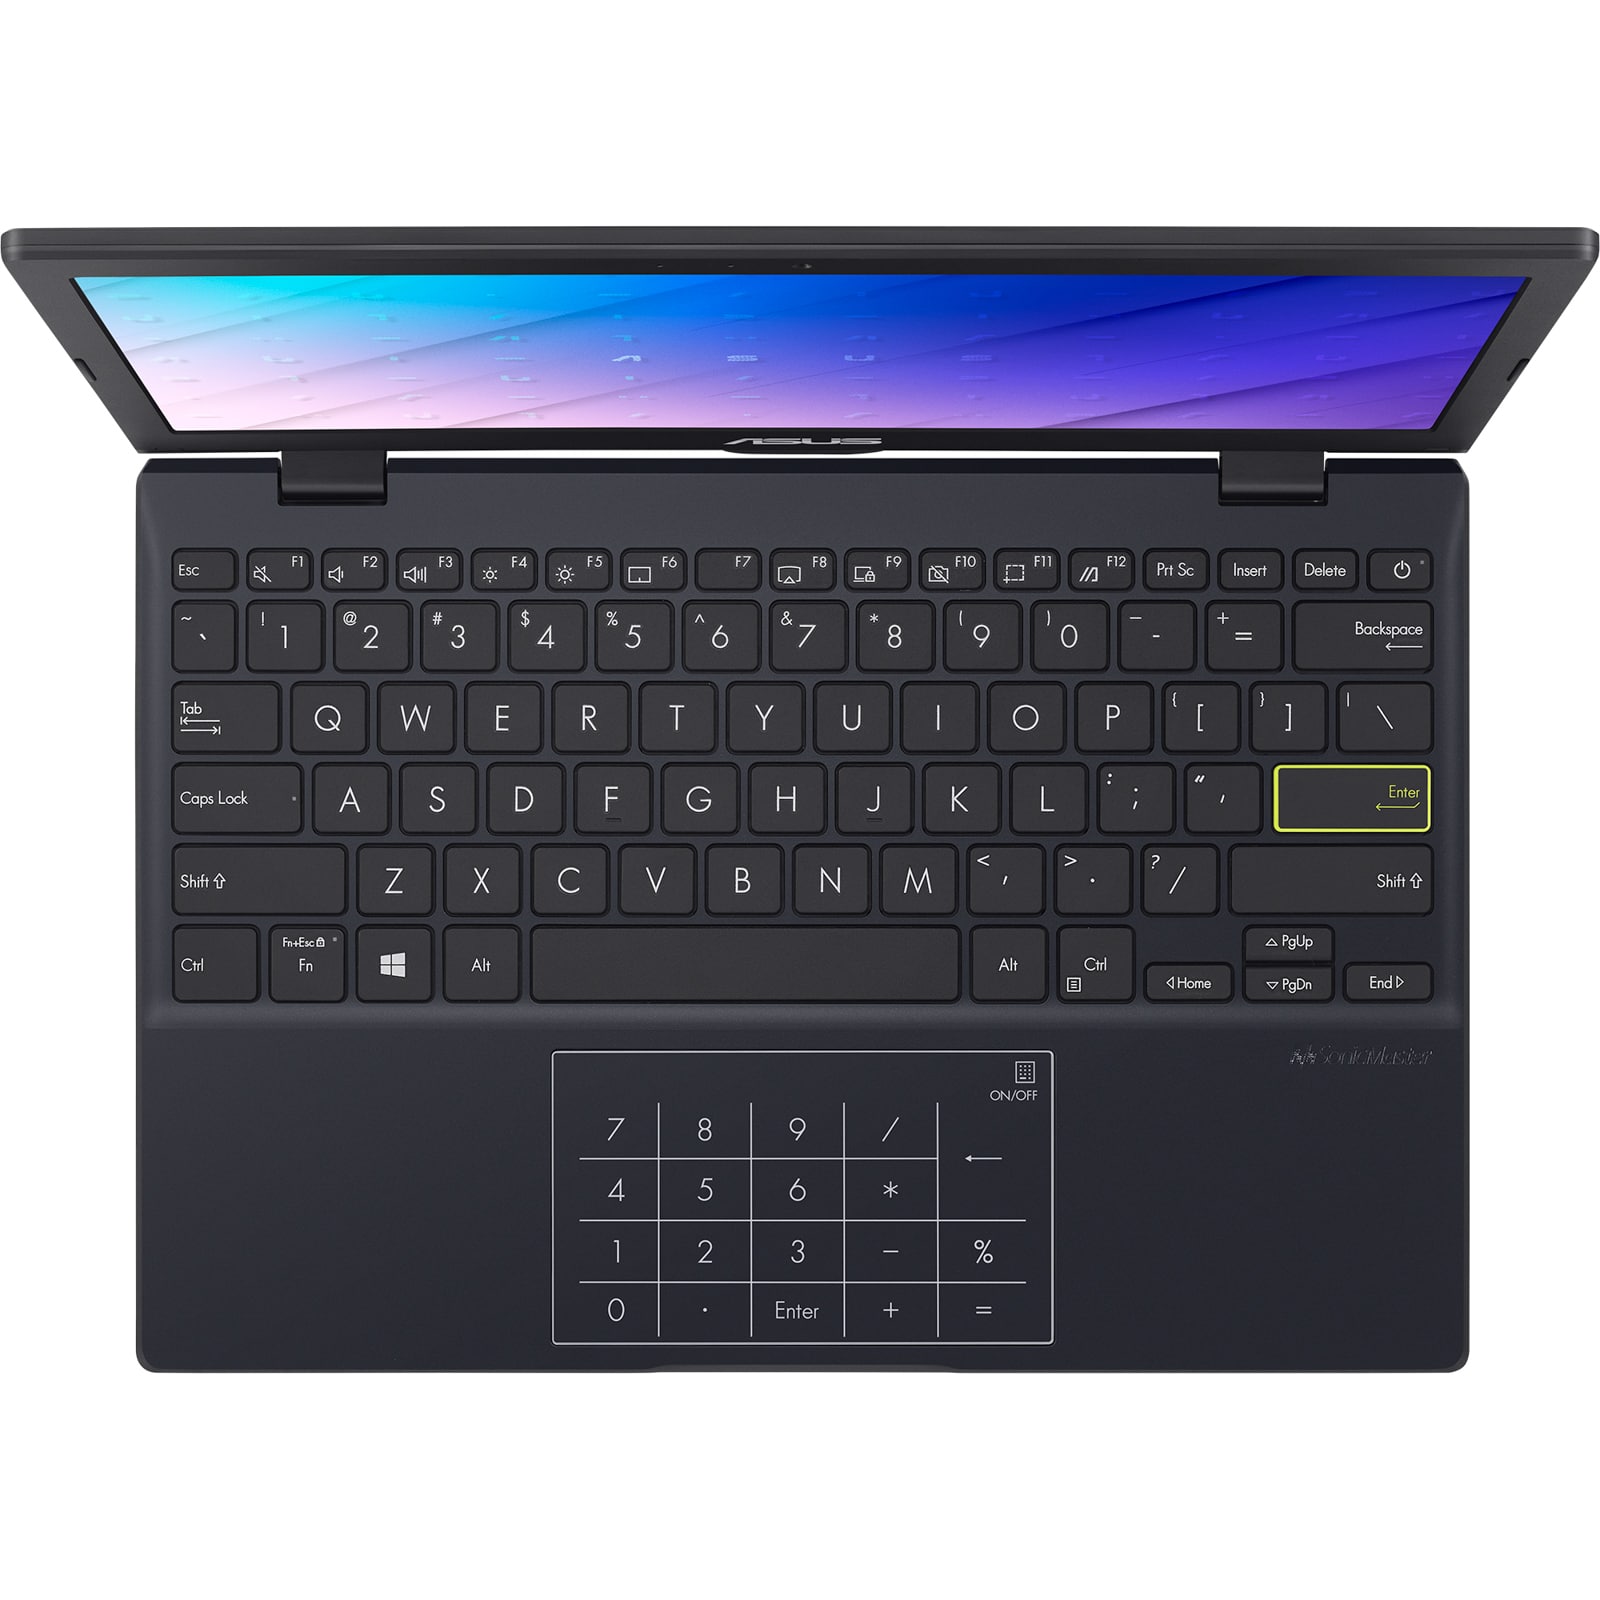 ASUS Laptop E210: laptop 11.6-inch cơ bản cho người dùng cơ bản, giá 6 triệu